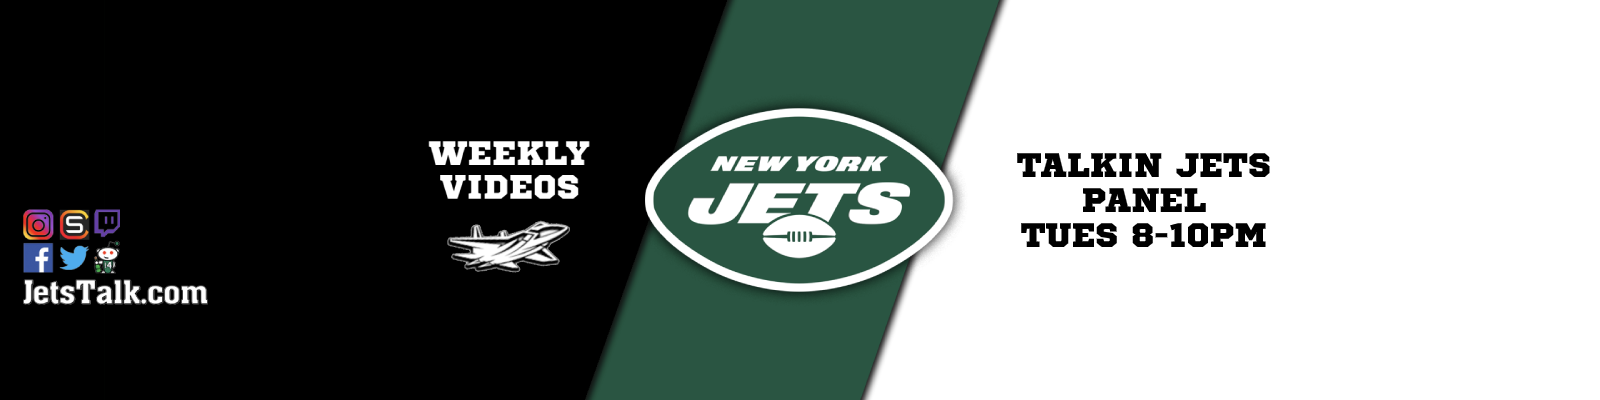 Jets Talk 24/7 - New York Jets Podcast